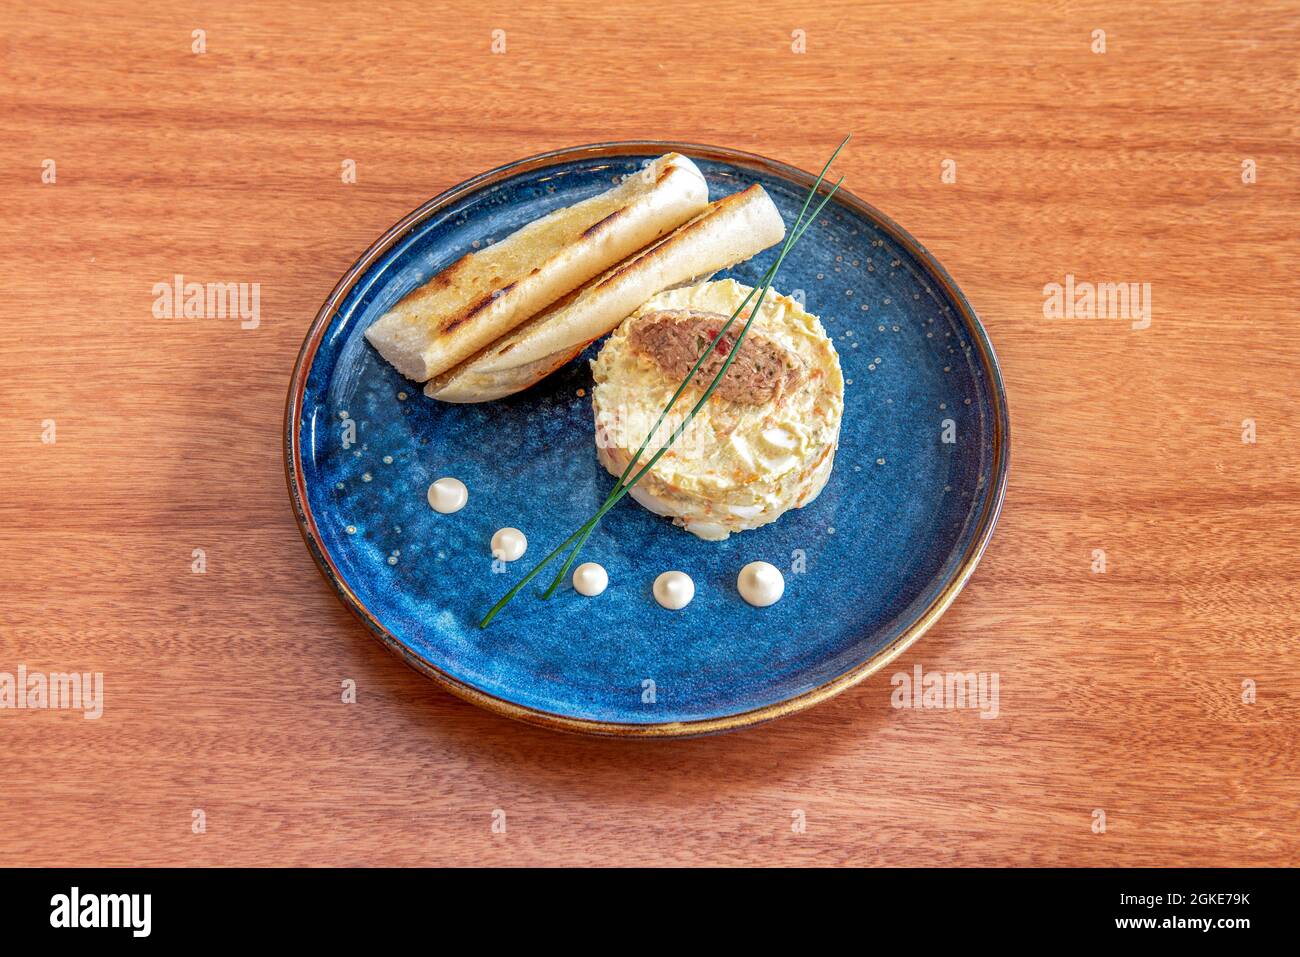 Salade russe préparée pour des tapas avec du thon en conserve et deux toasts de pain chaud sur une belle assiette bleue Banque D'Images